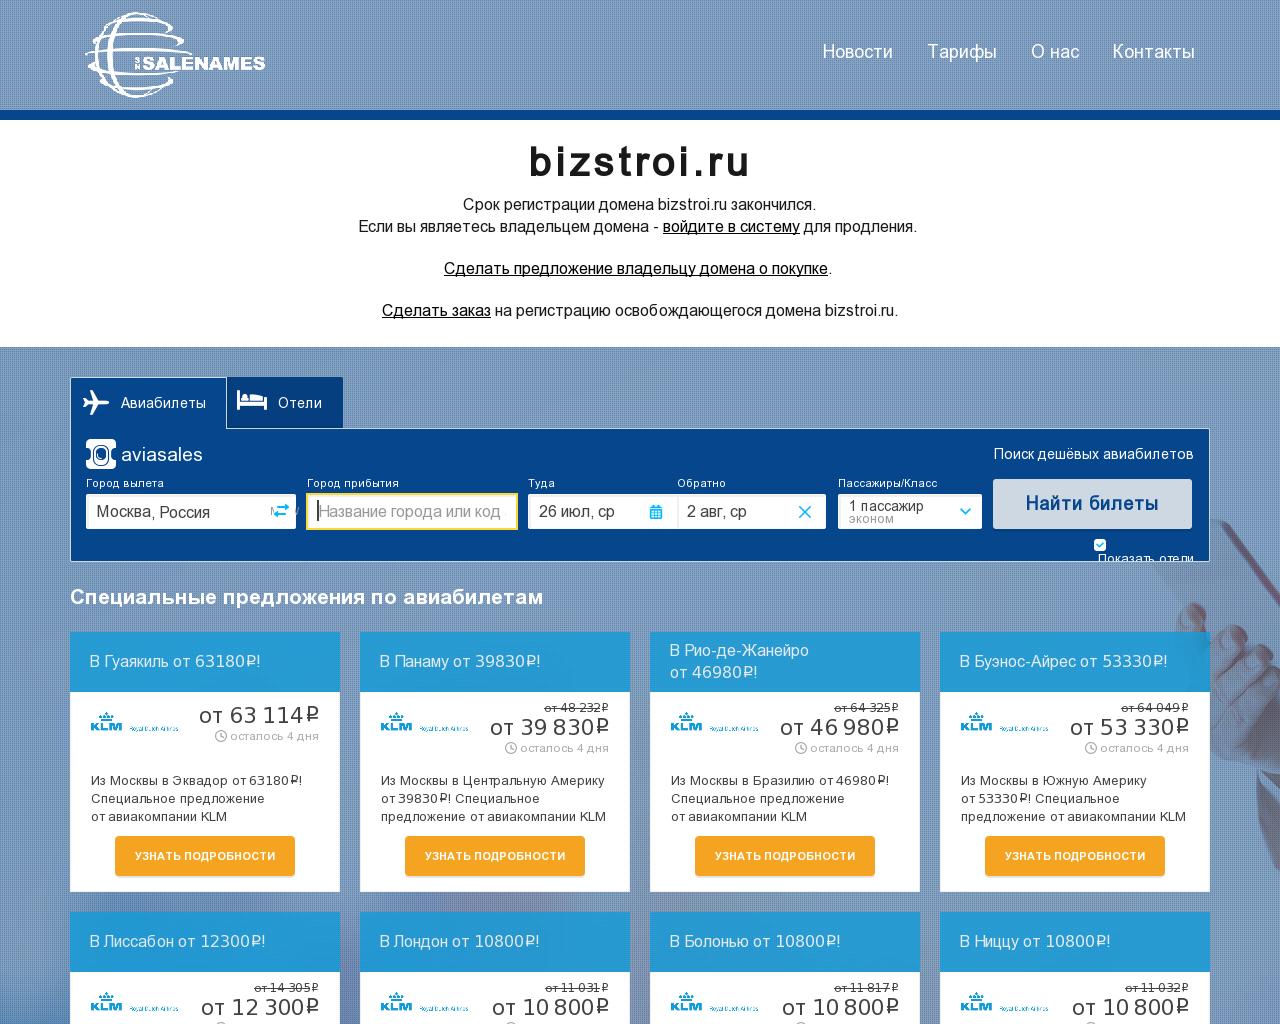 Изображение сайта bizstroi.ru в разрешении 1280x1024